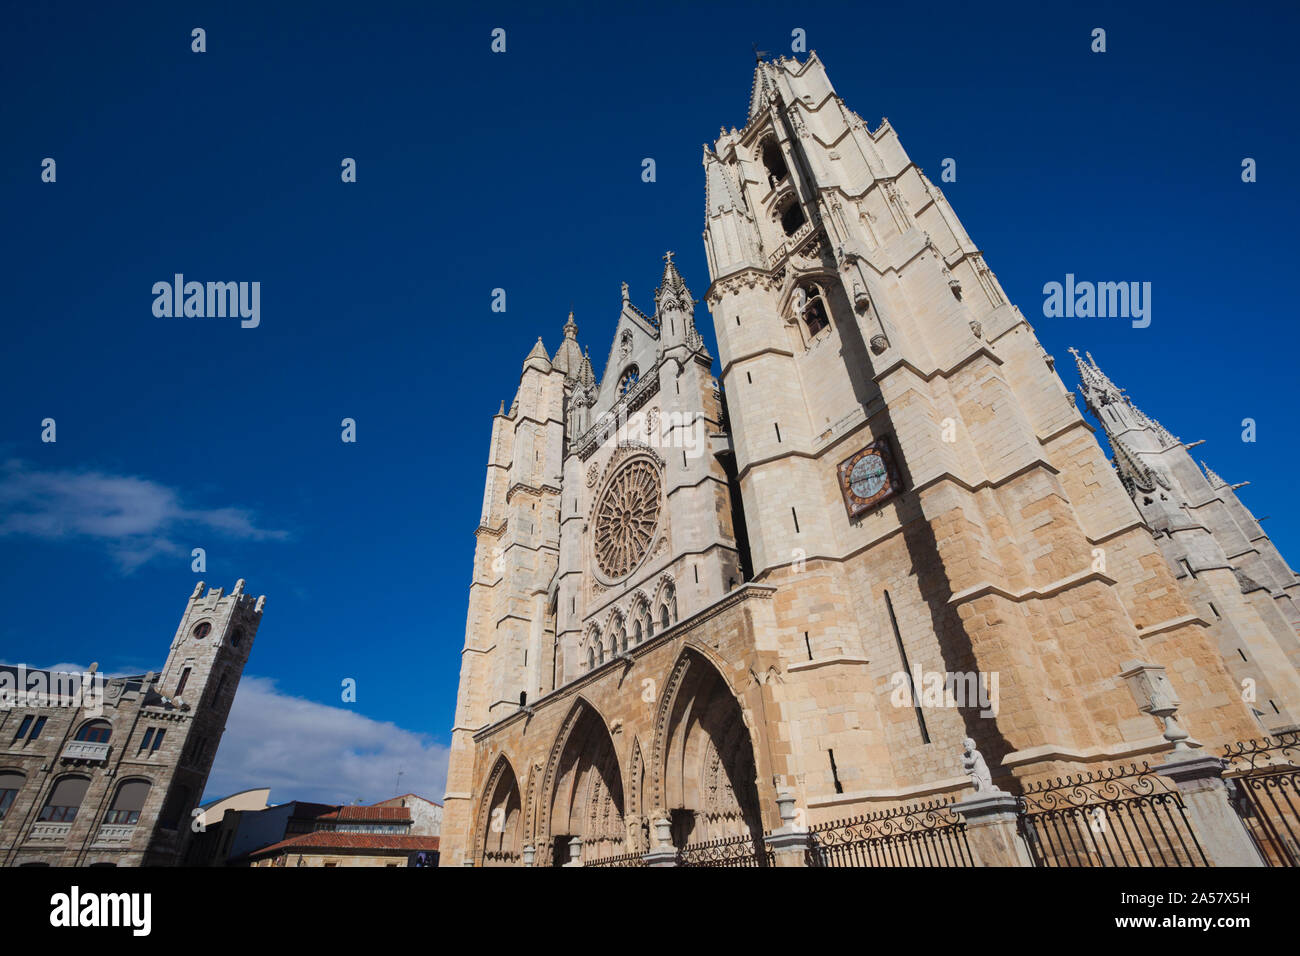 Basso angolo vista di una cattedrale, Cattedrale di León, Leon, provincia di León, Castilla y Leon, Spagna Foto Stock